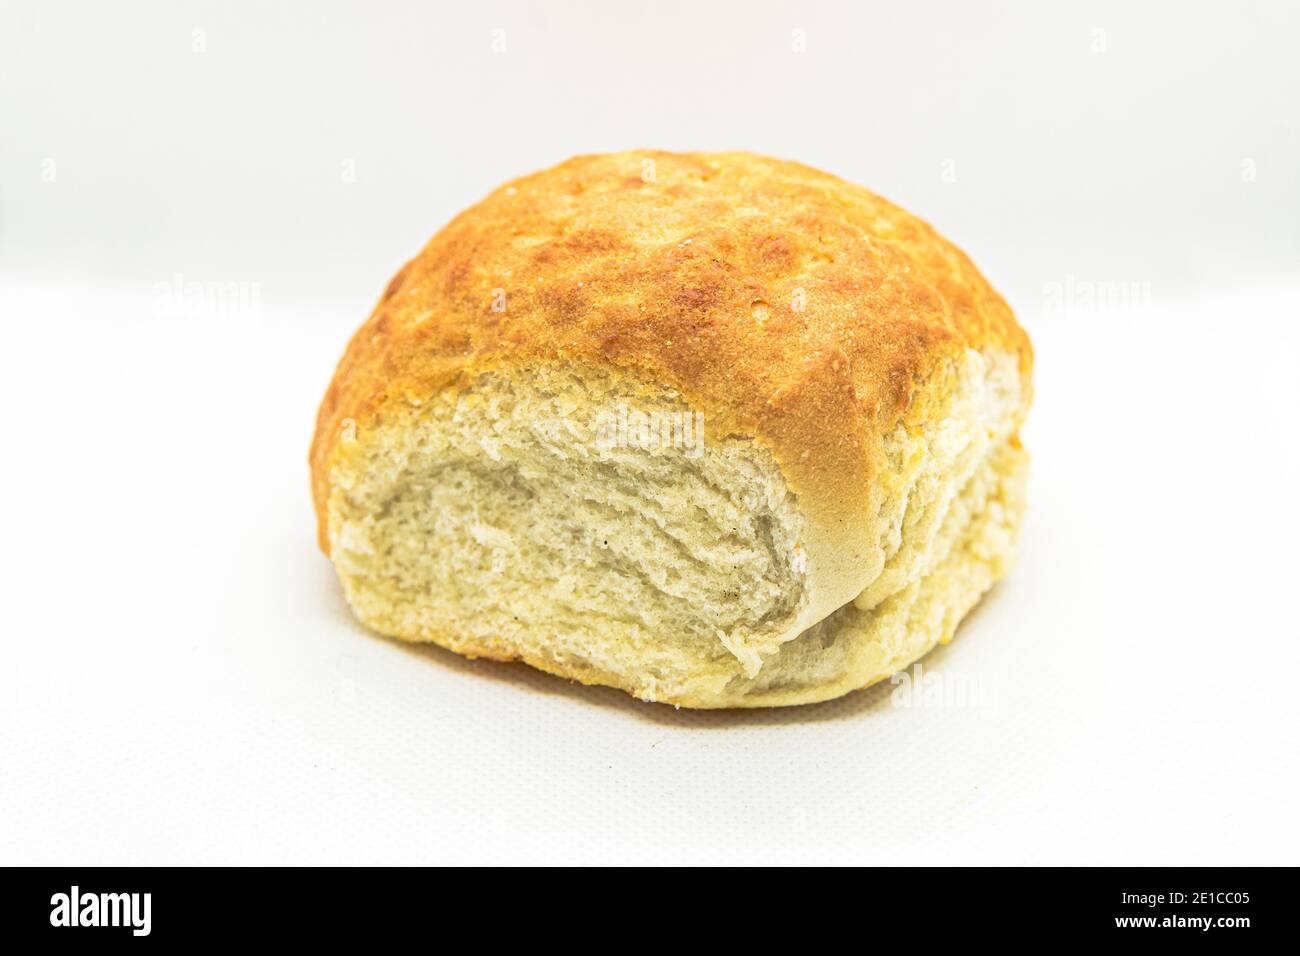 Tiger bread bun, white bread bap Stock Photo